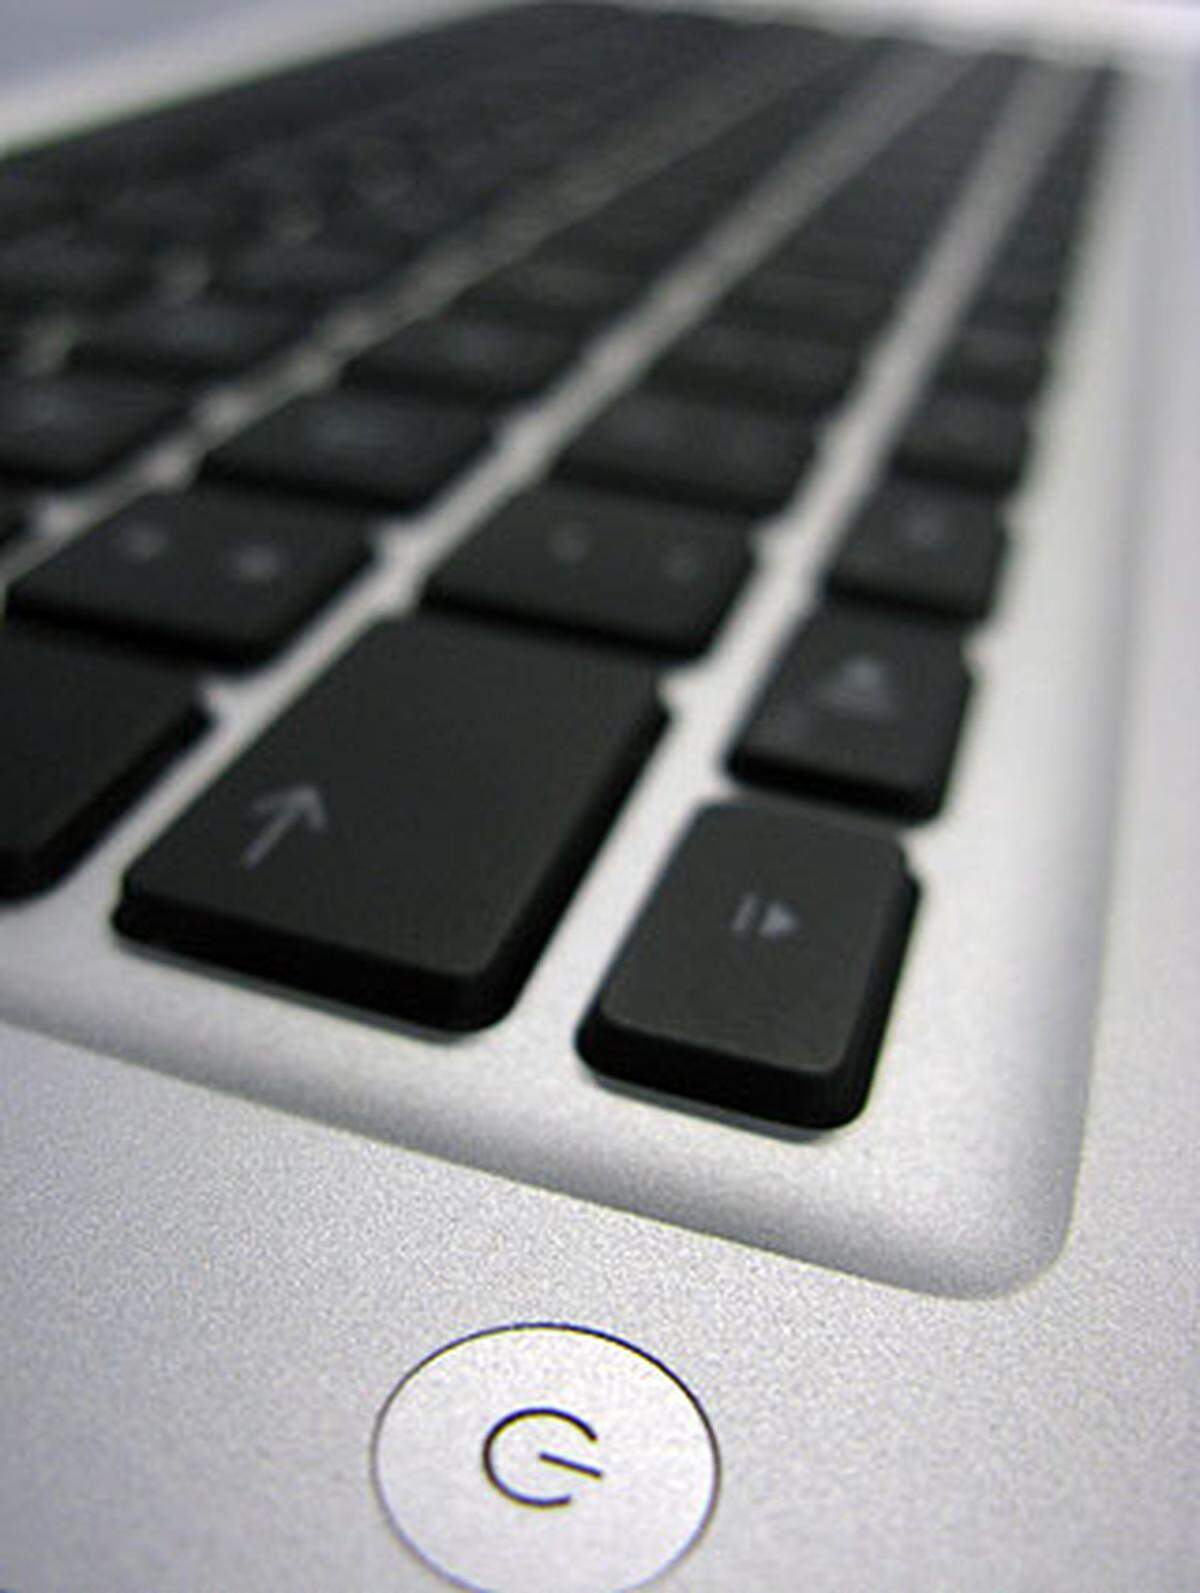 Das Gerät ist erstklassig verarbeitet. Die Rechenleistung lässt sich mit der eines MacBooks vergleichen und ist für Standardanwendungen wie Internet, Textverarbeitung oder auch Bildbearbeitung mehr als ausreichend.